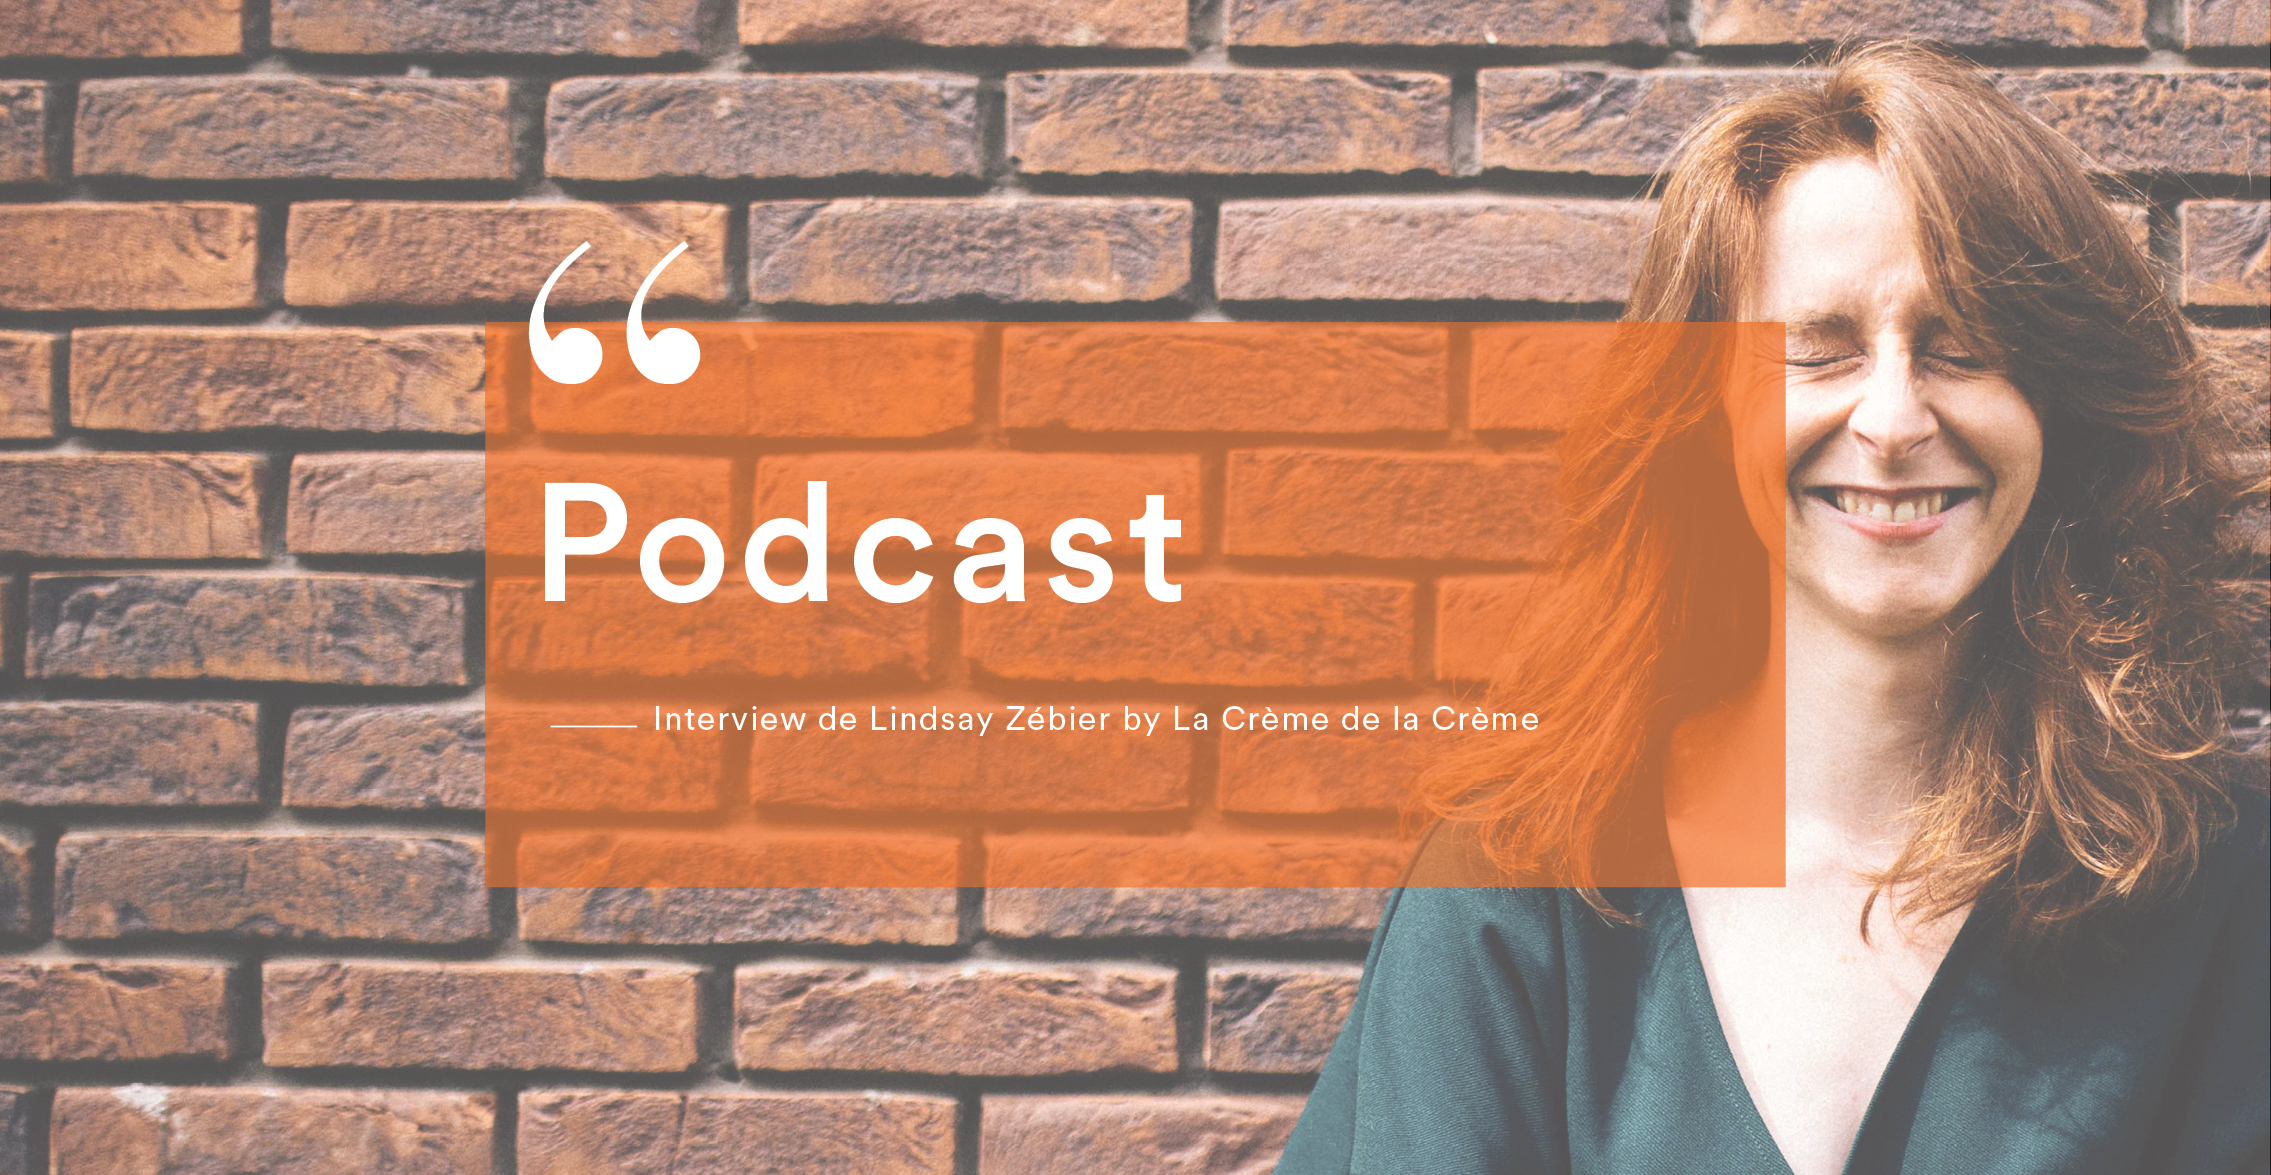 Podcast de Lindsay Zébier by La Crème de la Crème